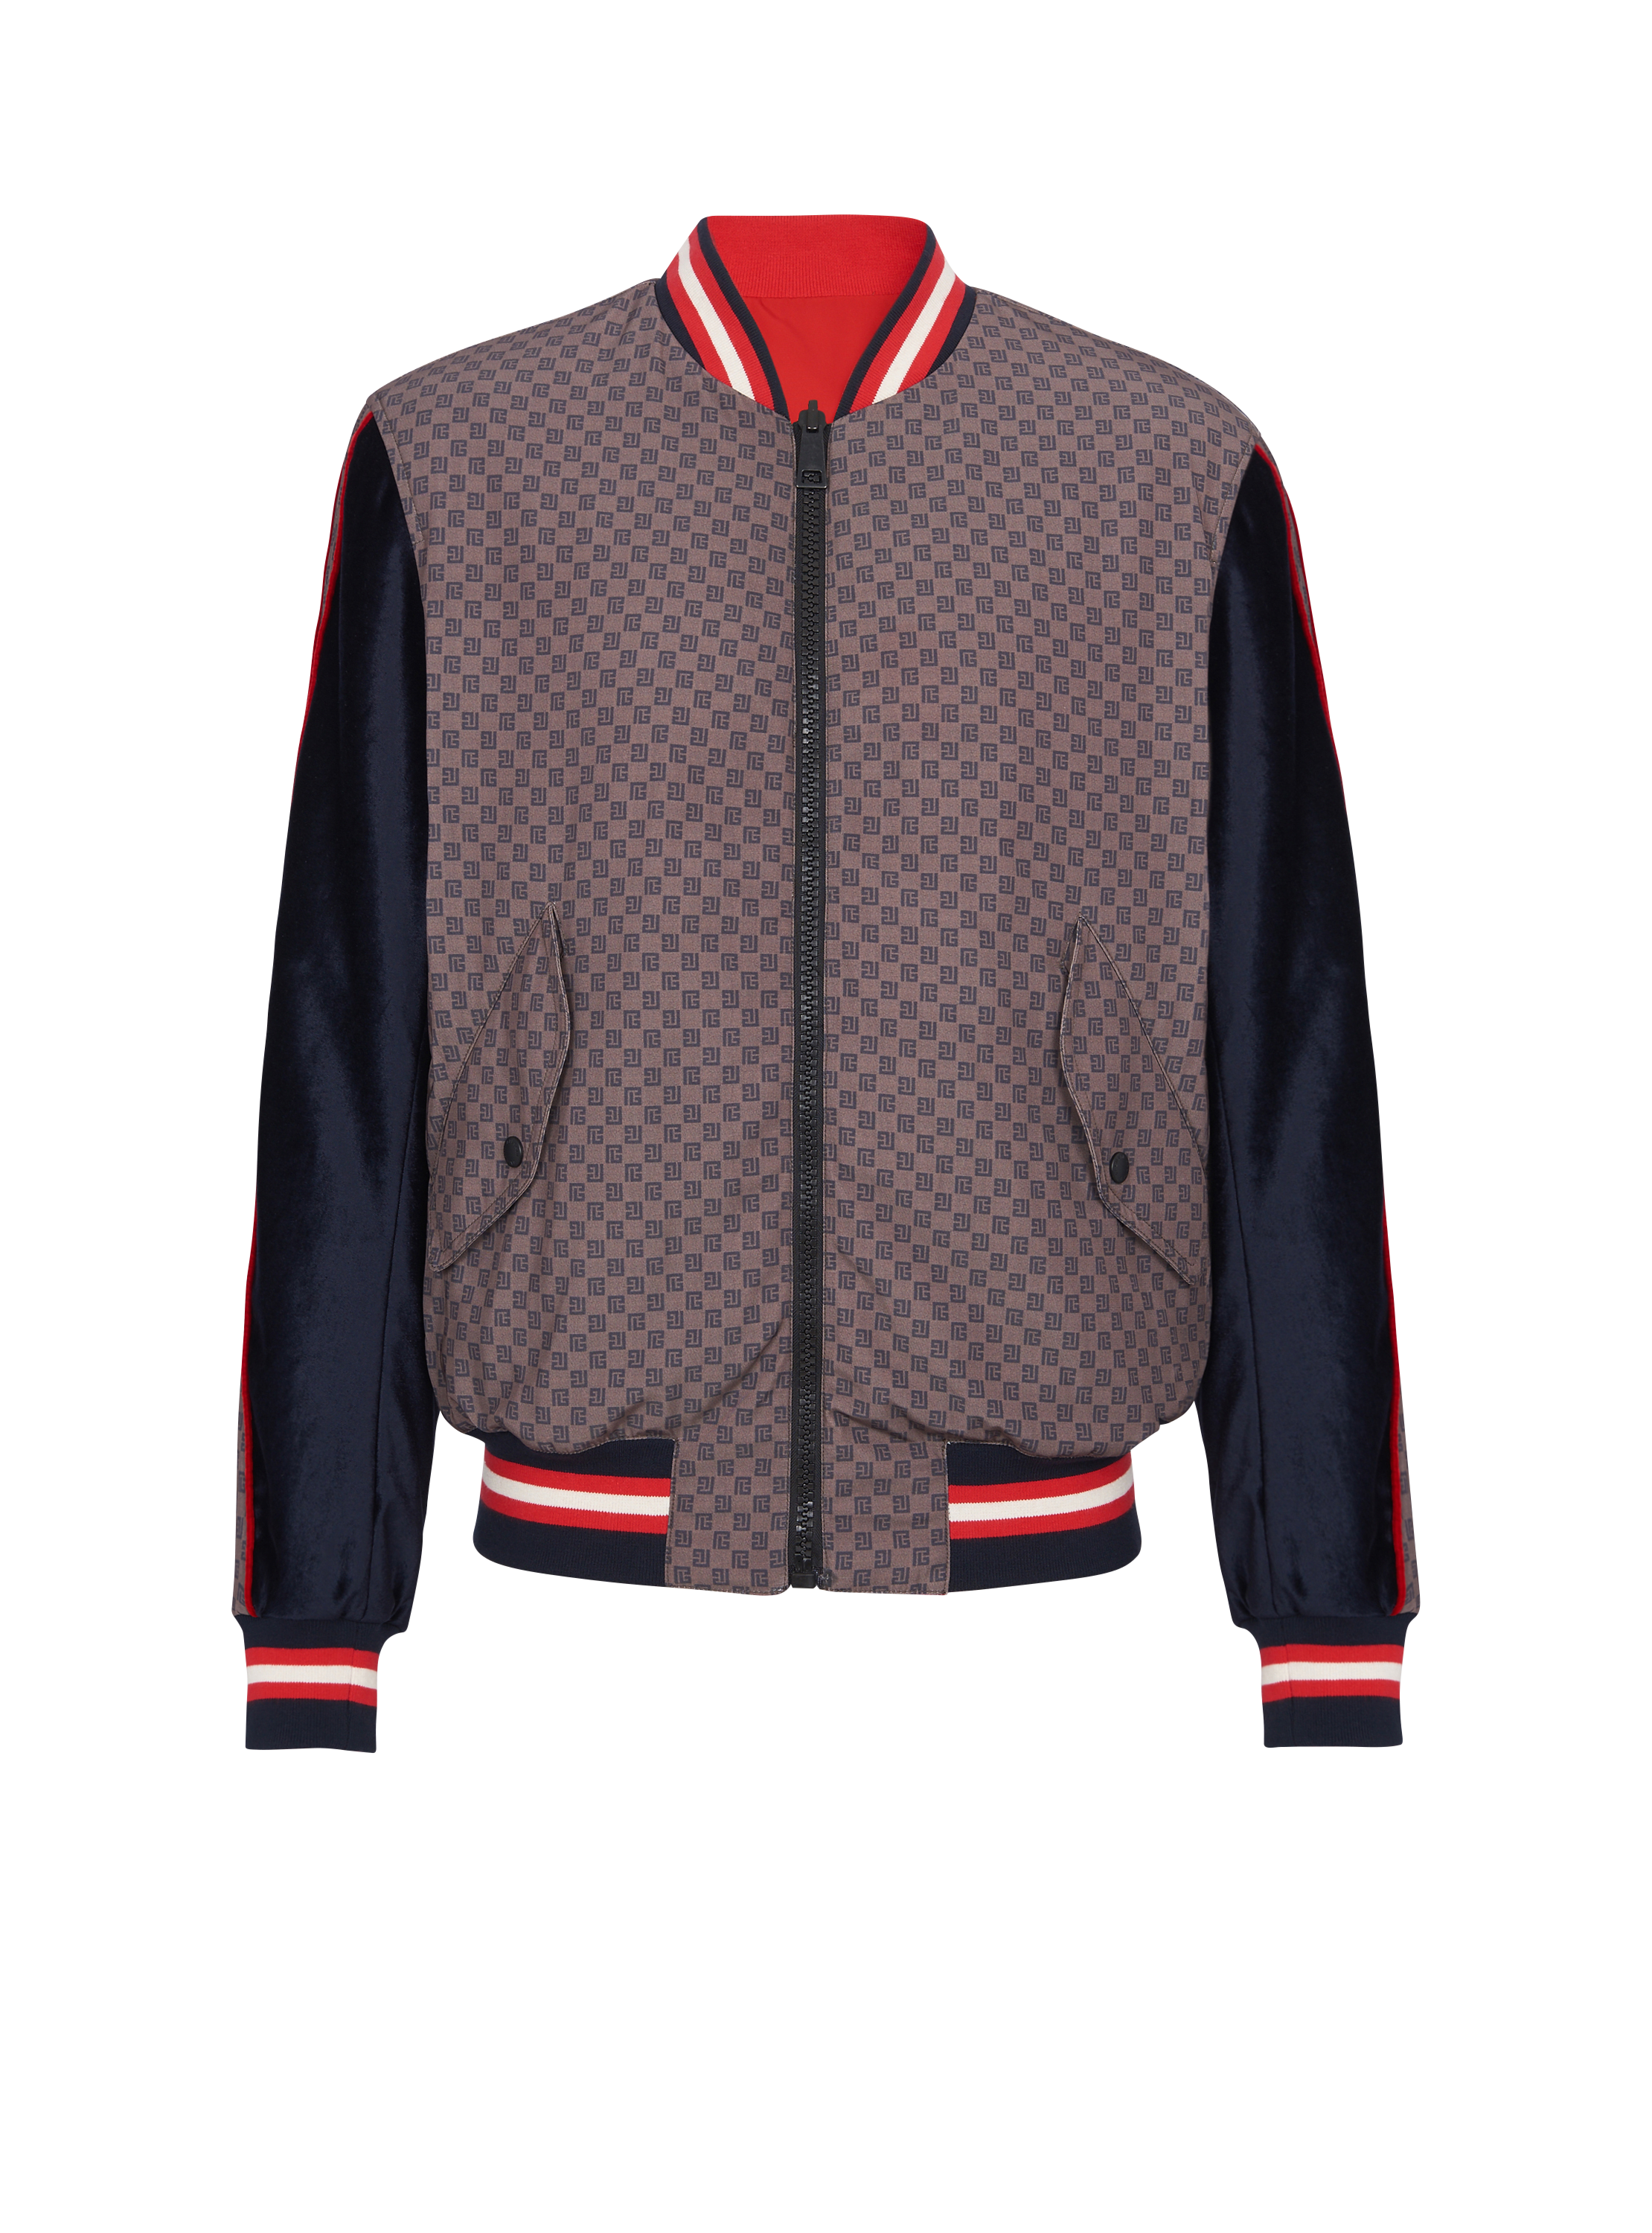 monogram-pattern reversible bomber jacket, Balmain